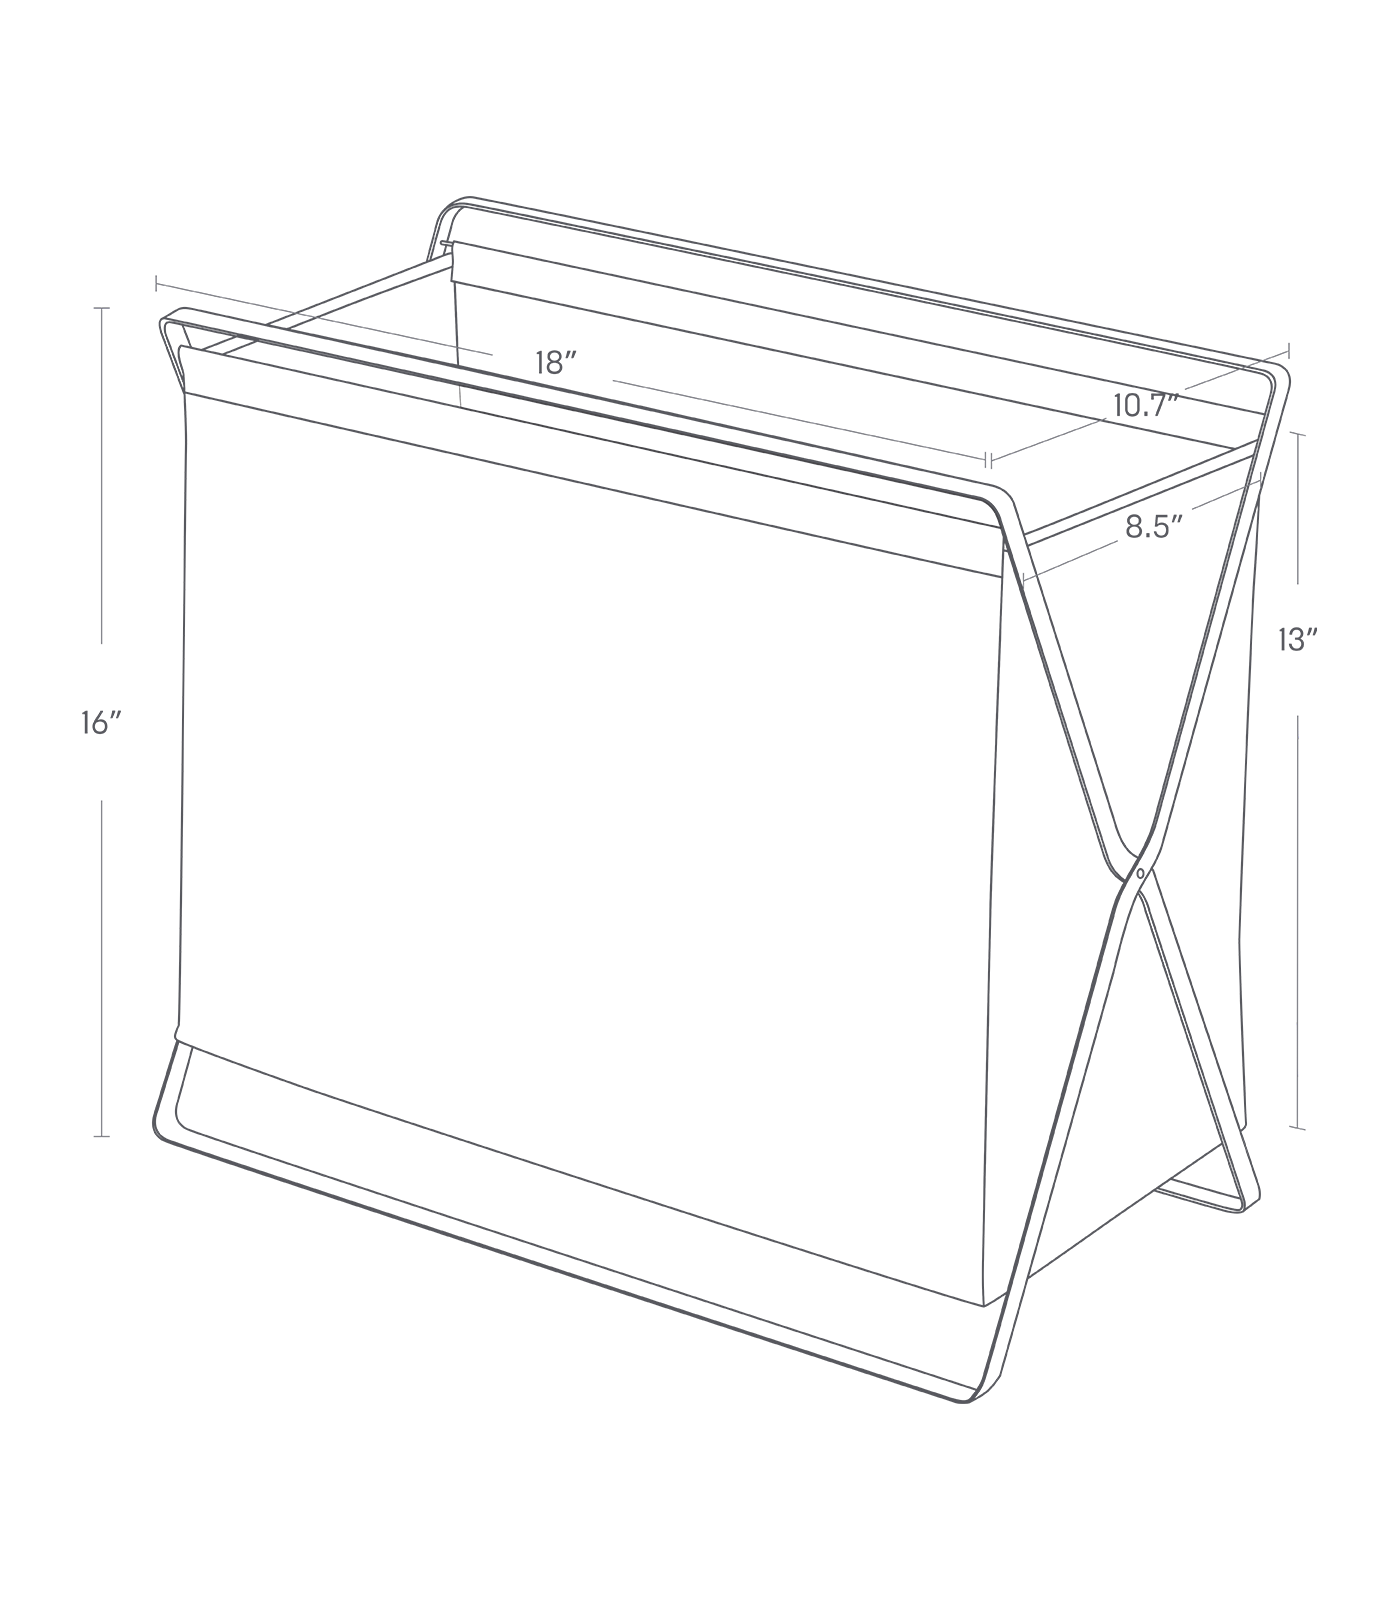 Dimension image for Folding Storage Hamper showing length of 18